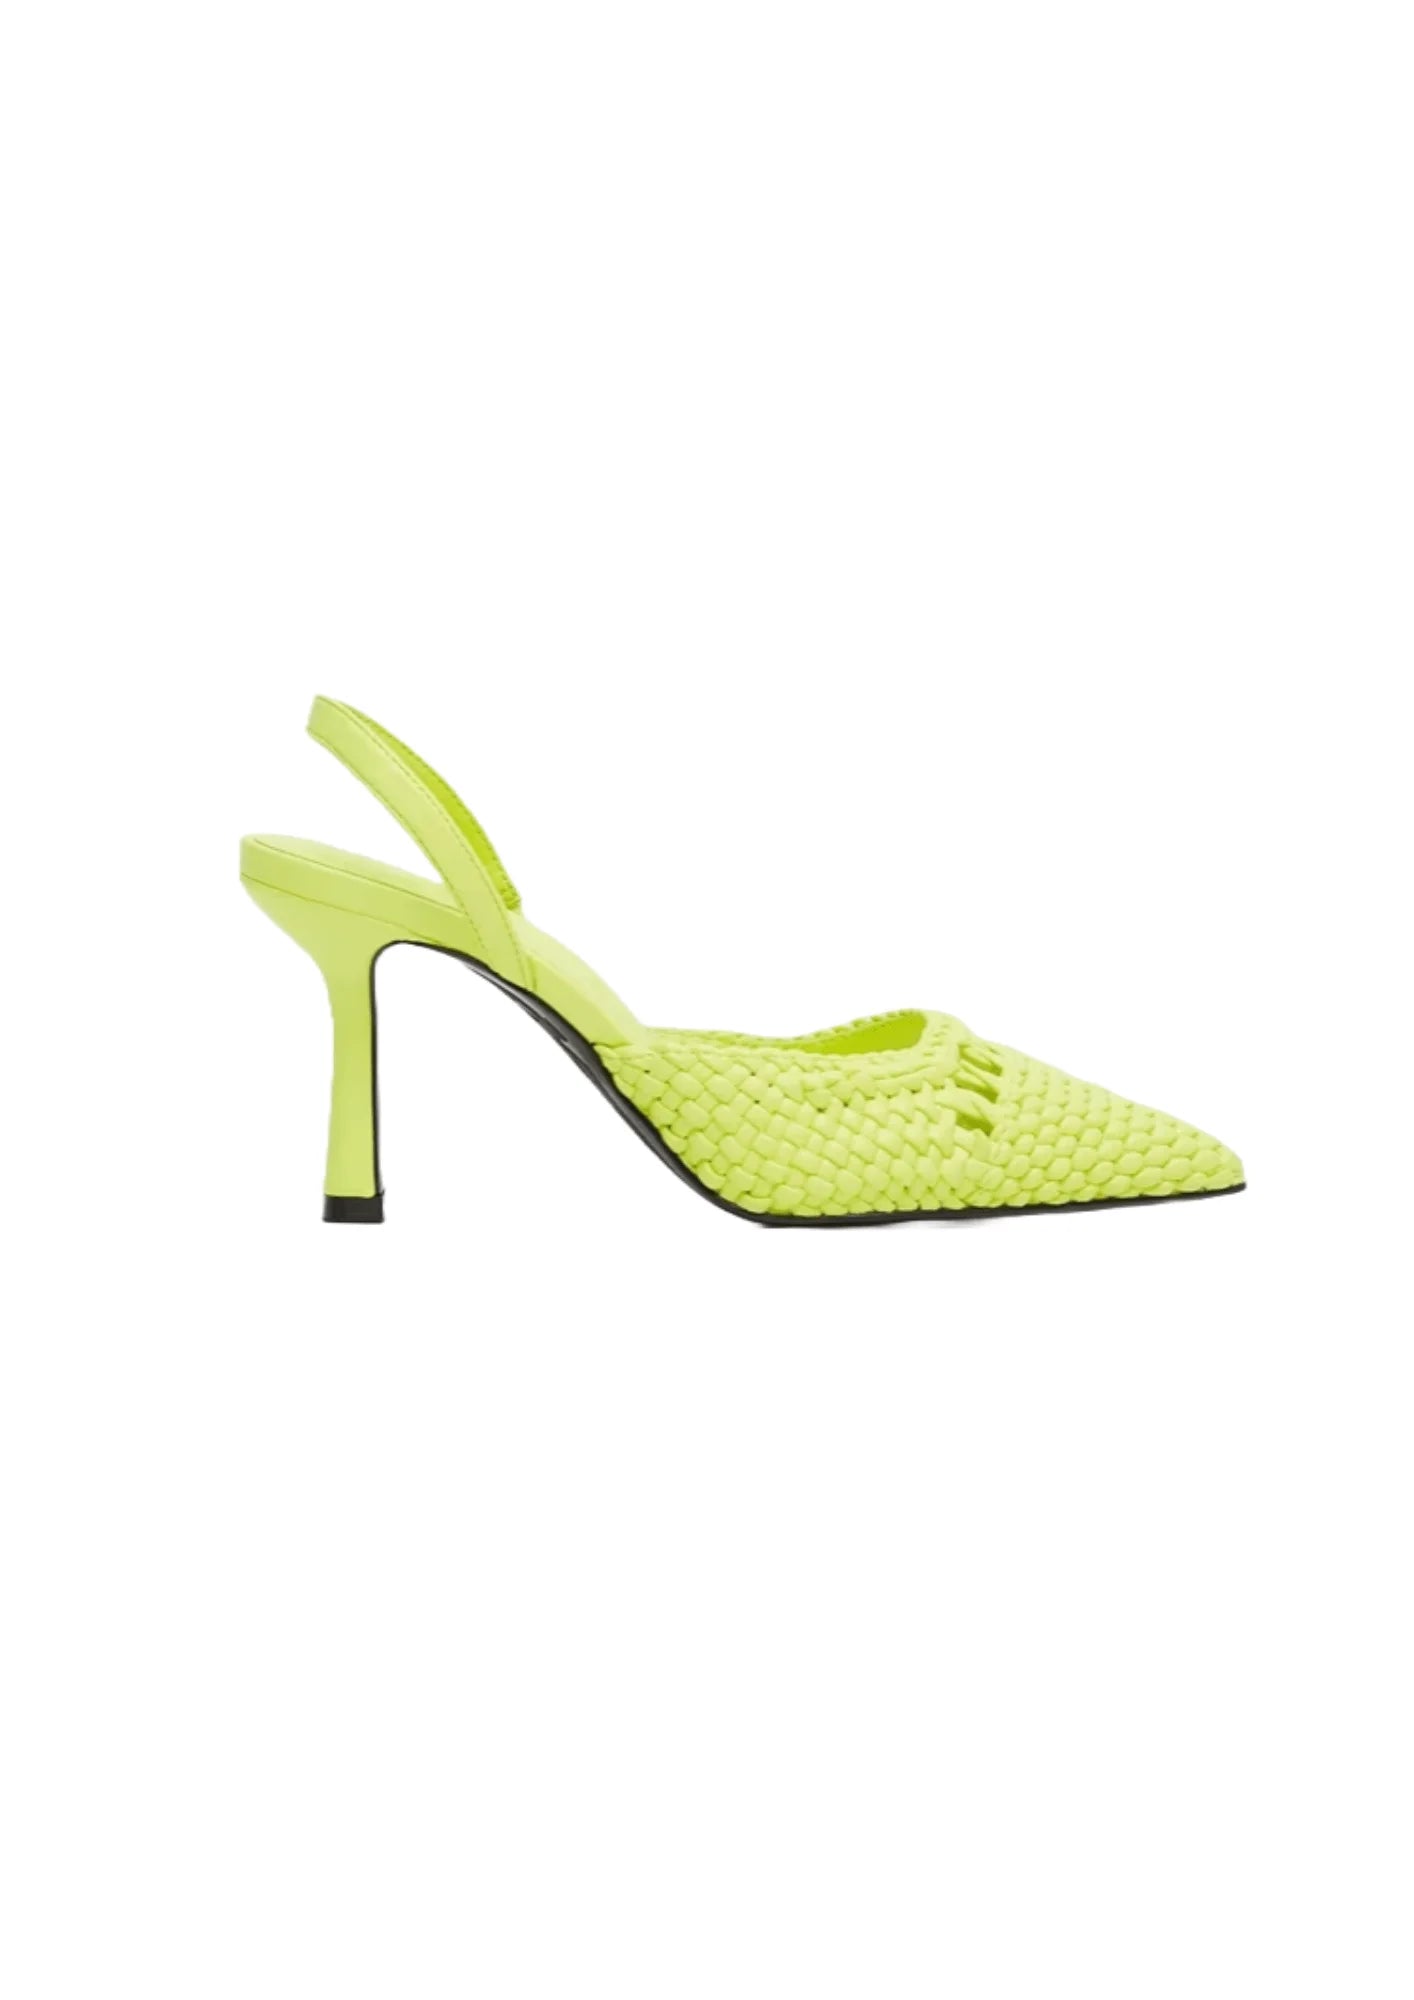 Chaussures à talon tressé de citron vert